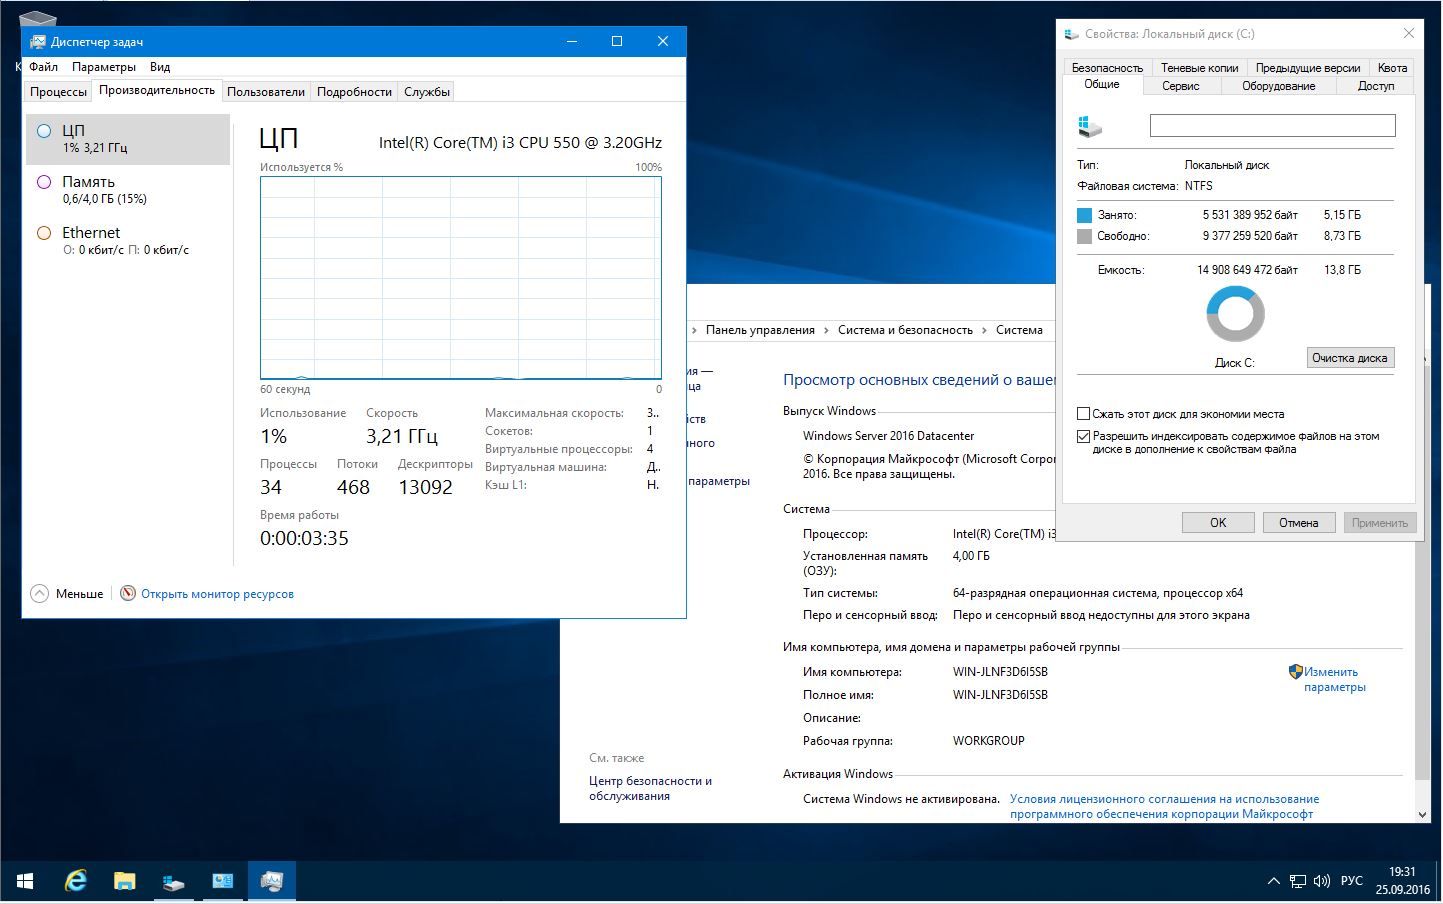 Microsoft Windows Server 2016 DataCenter 14393.187.1 x64 RU-RU MINI 2x1 - «Windows»